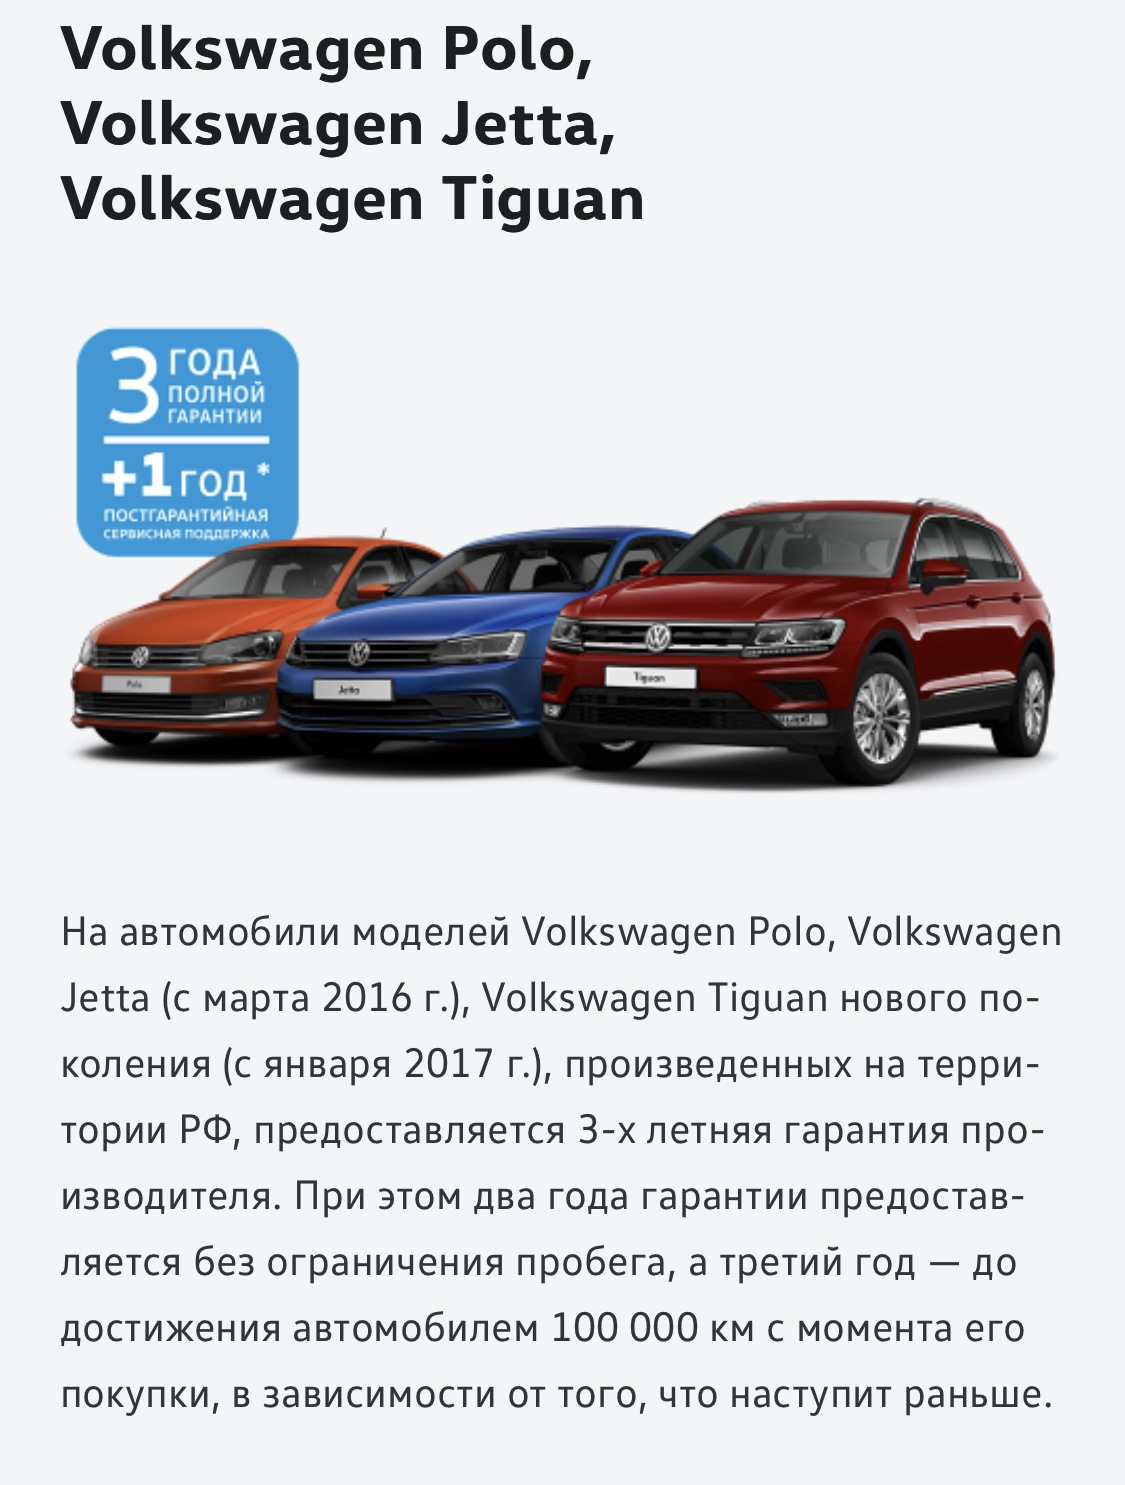 Volkswagen плюсы и минусы. Фольксваген плюсы и минусы. Volkswagen Polo программа первый автомобиль. Фольксваген Тигуан гарантия на автомобиль. Гарантия 1 год на автомобиль.